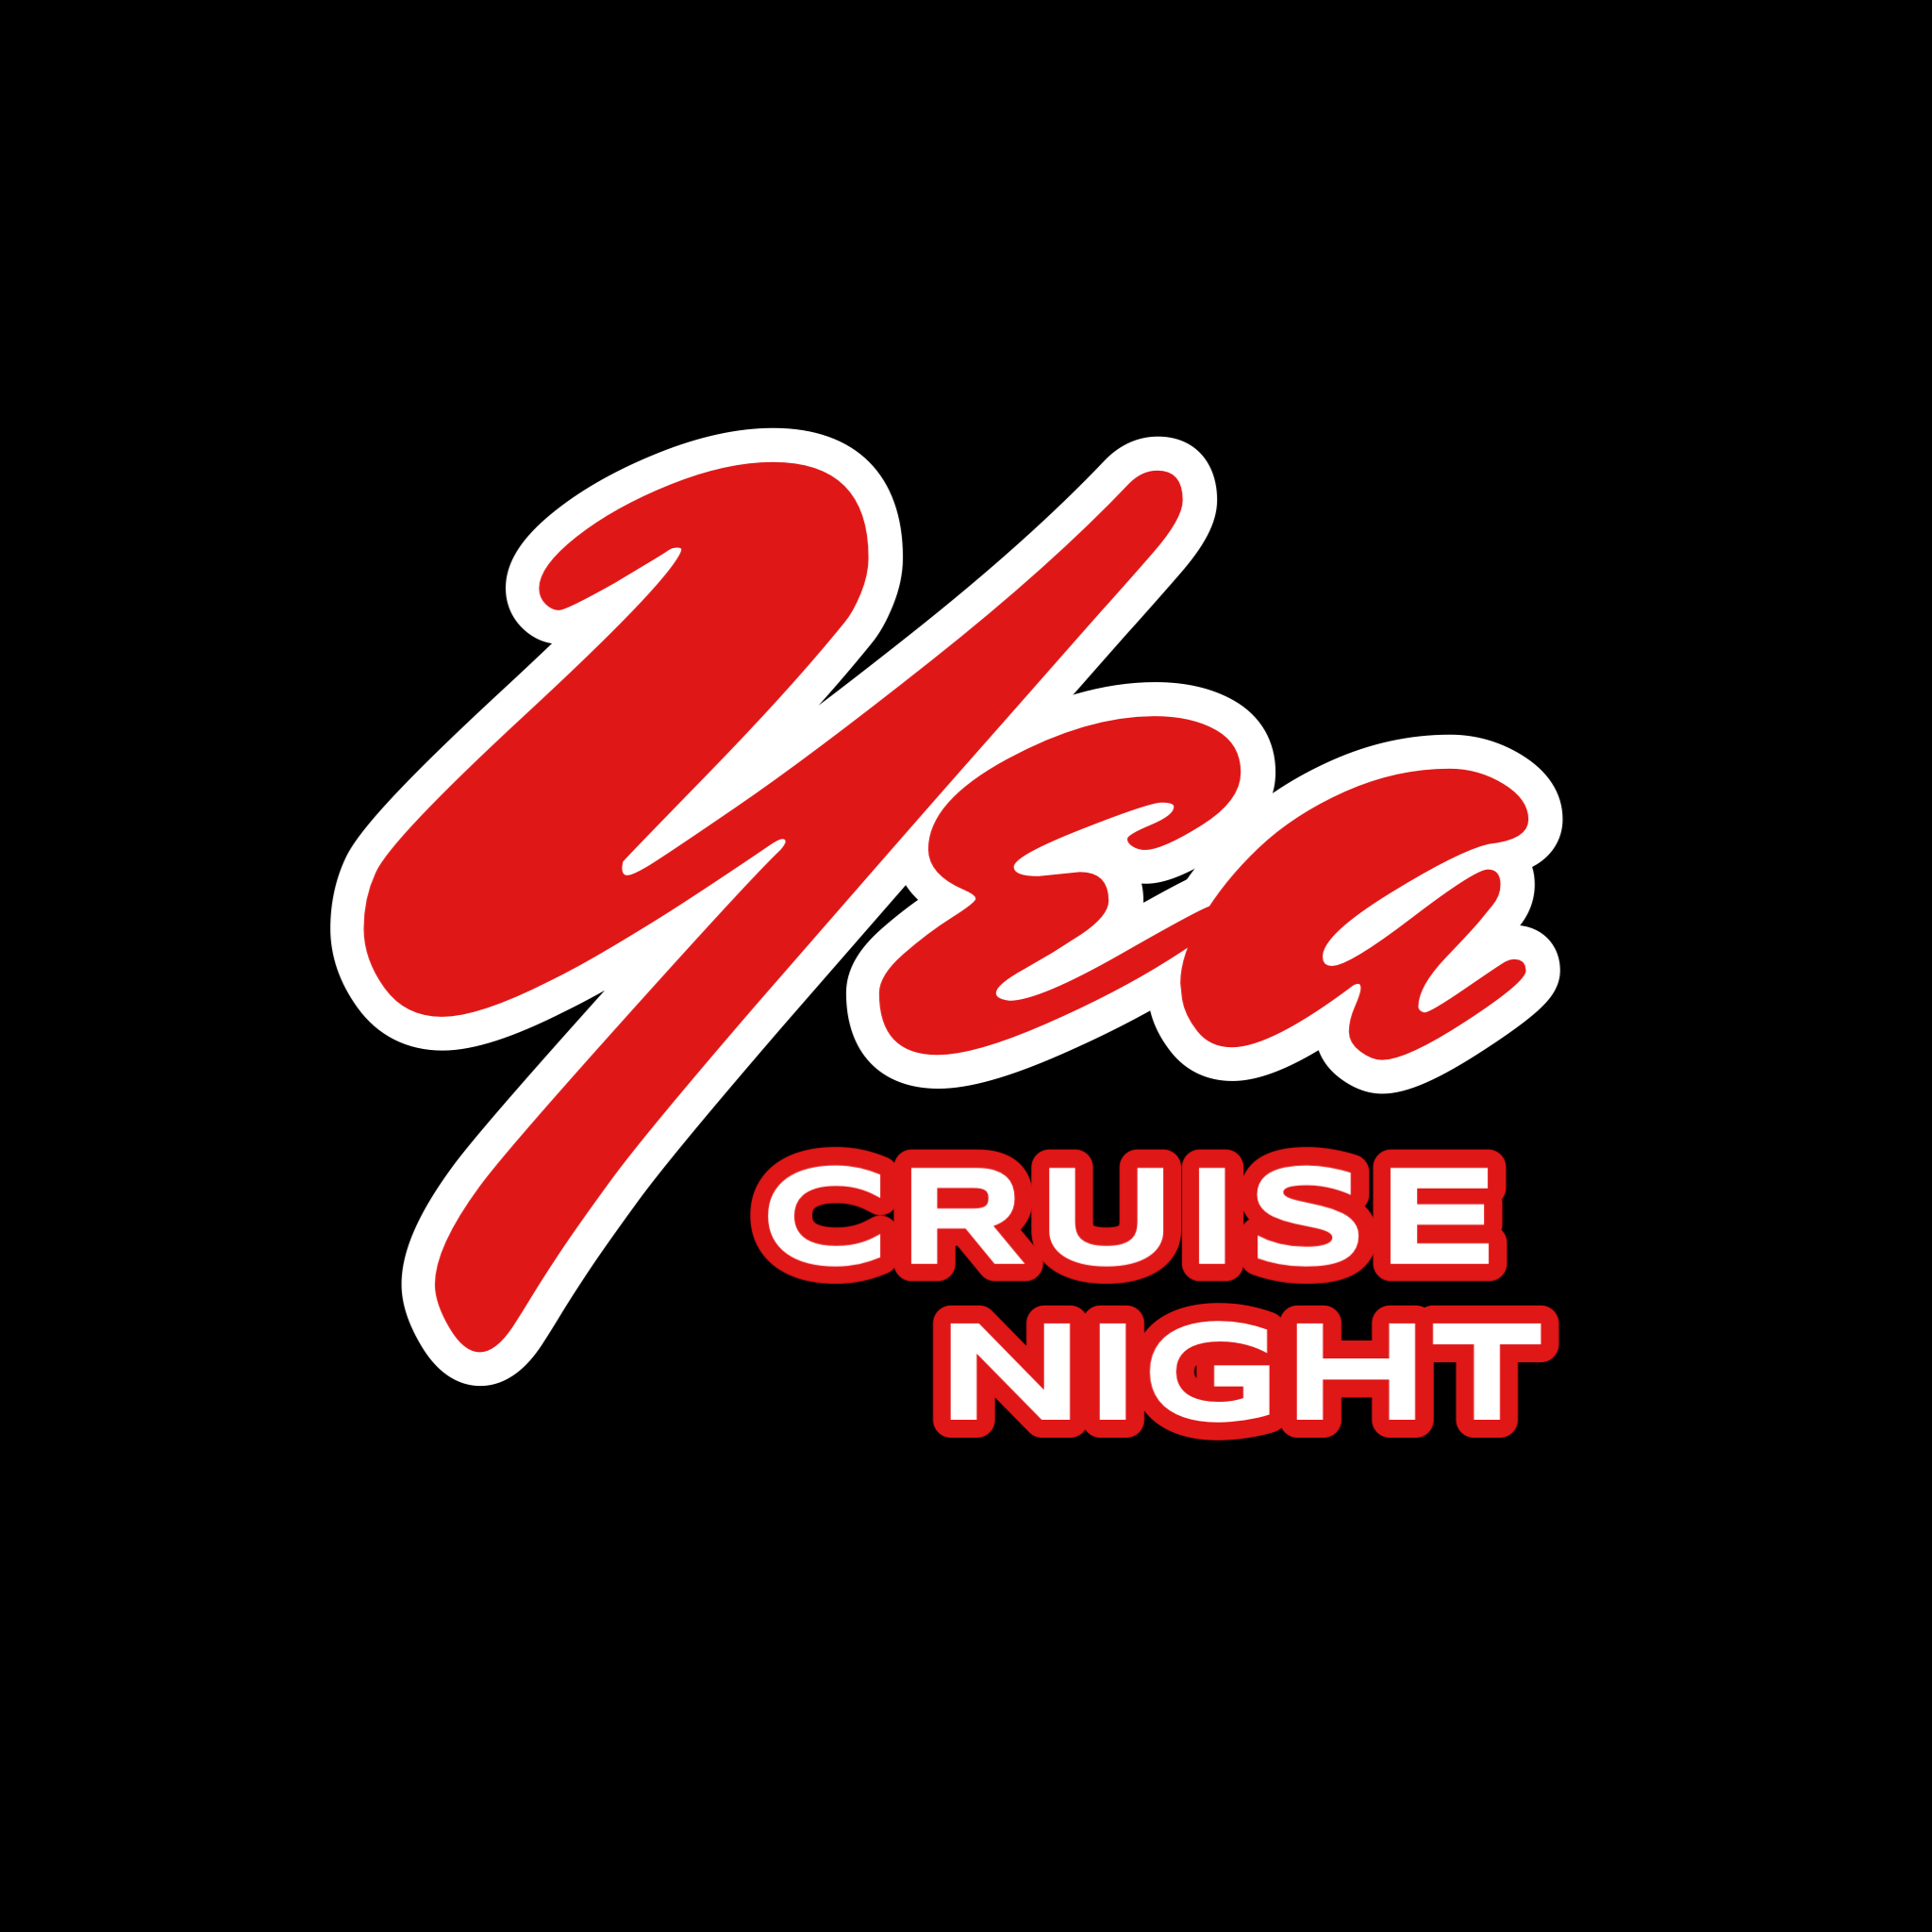 Yea Cruise Night